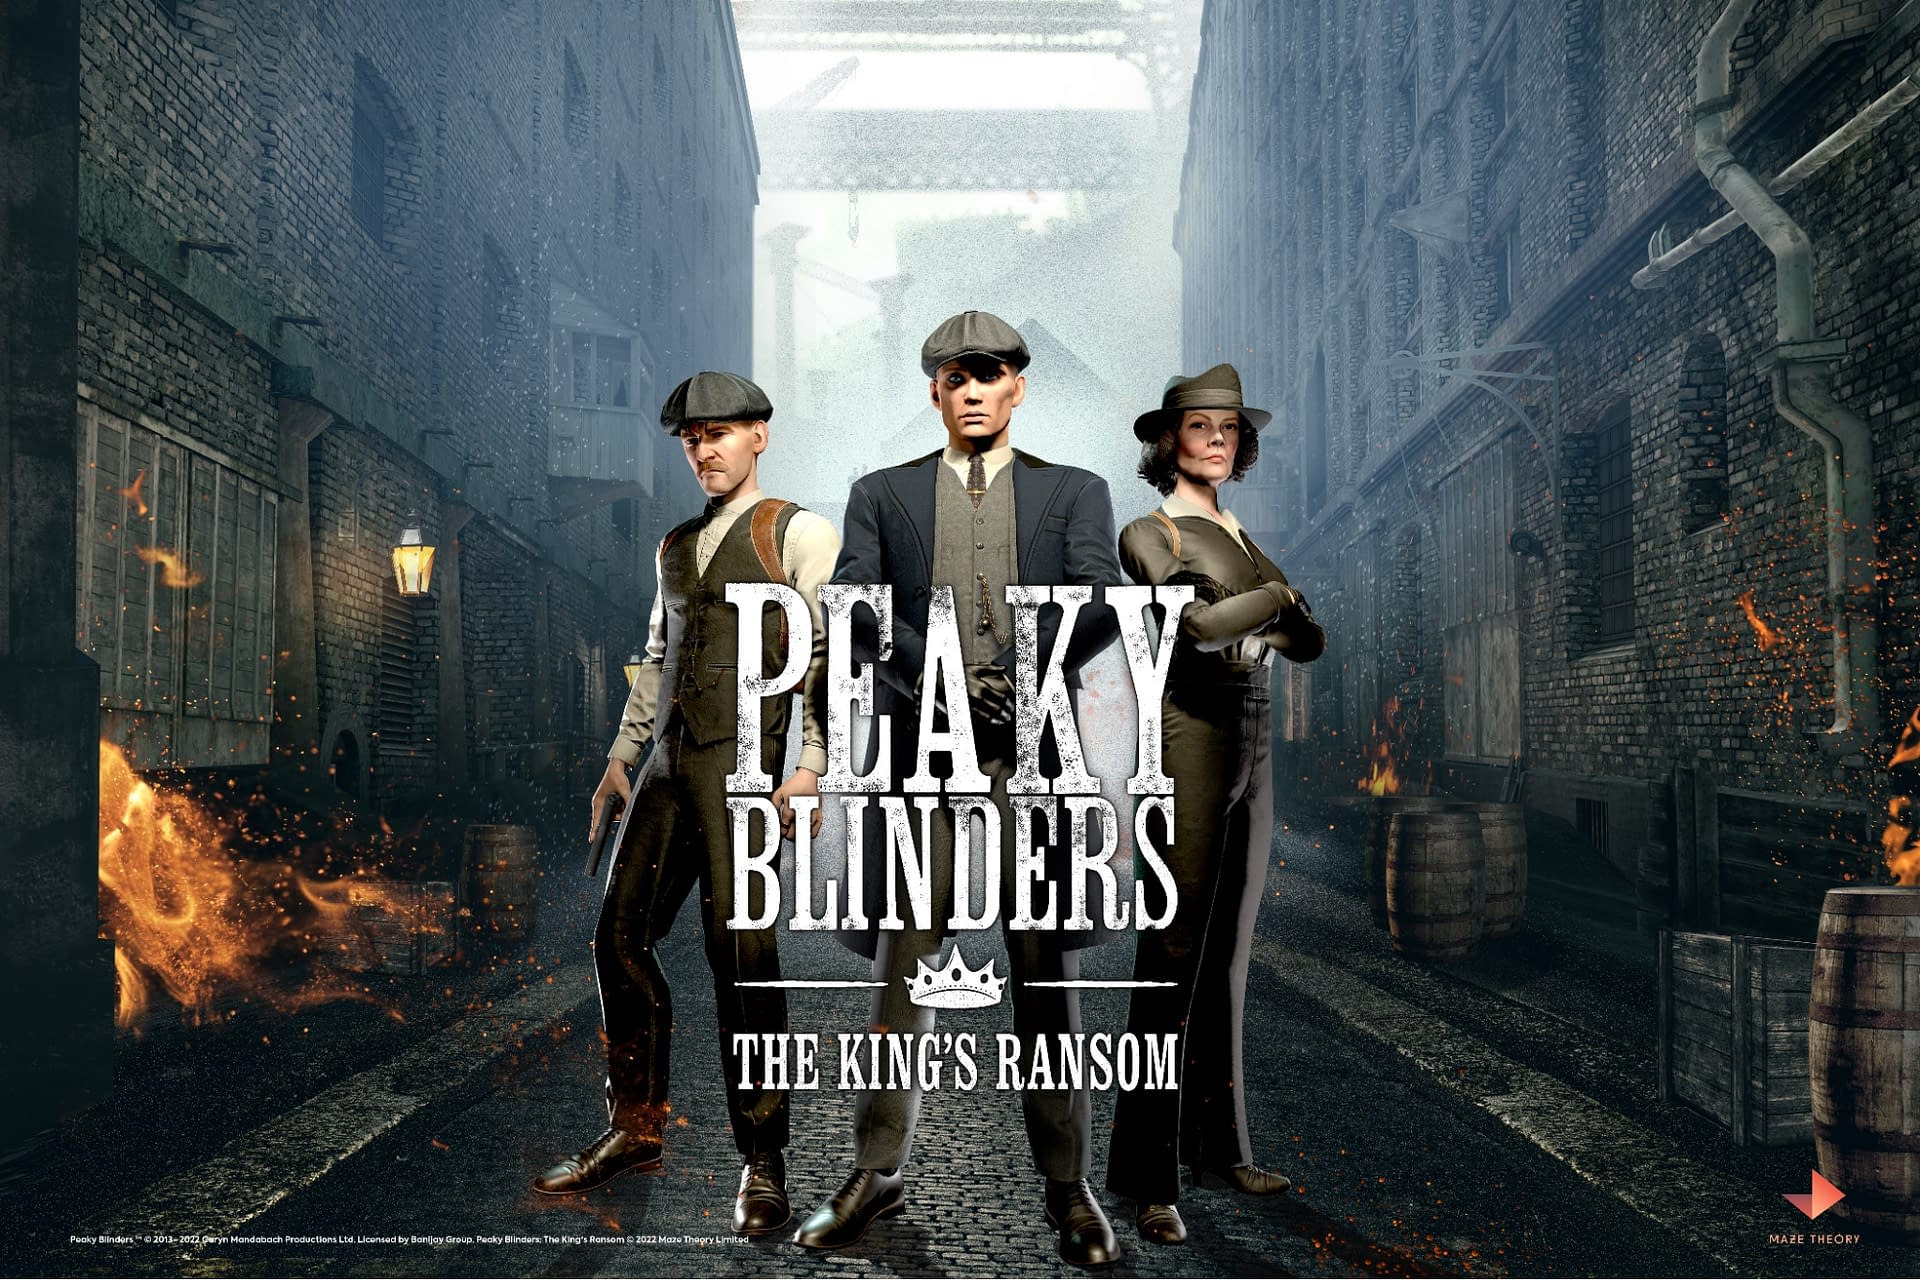 Peaky Blinders, Season 5 Trailer